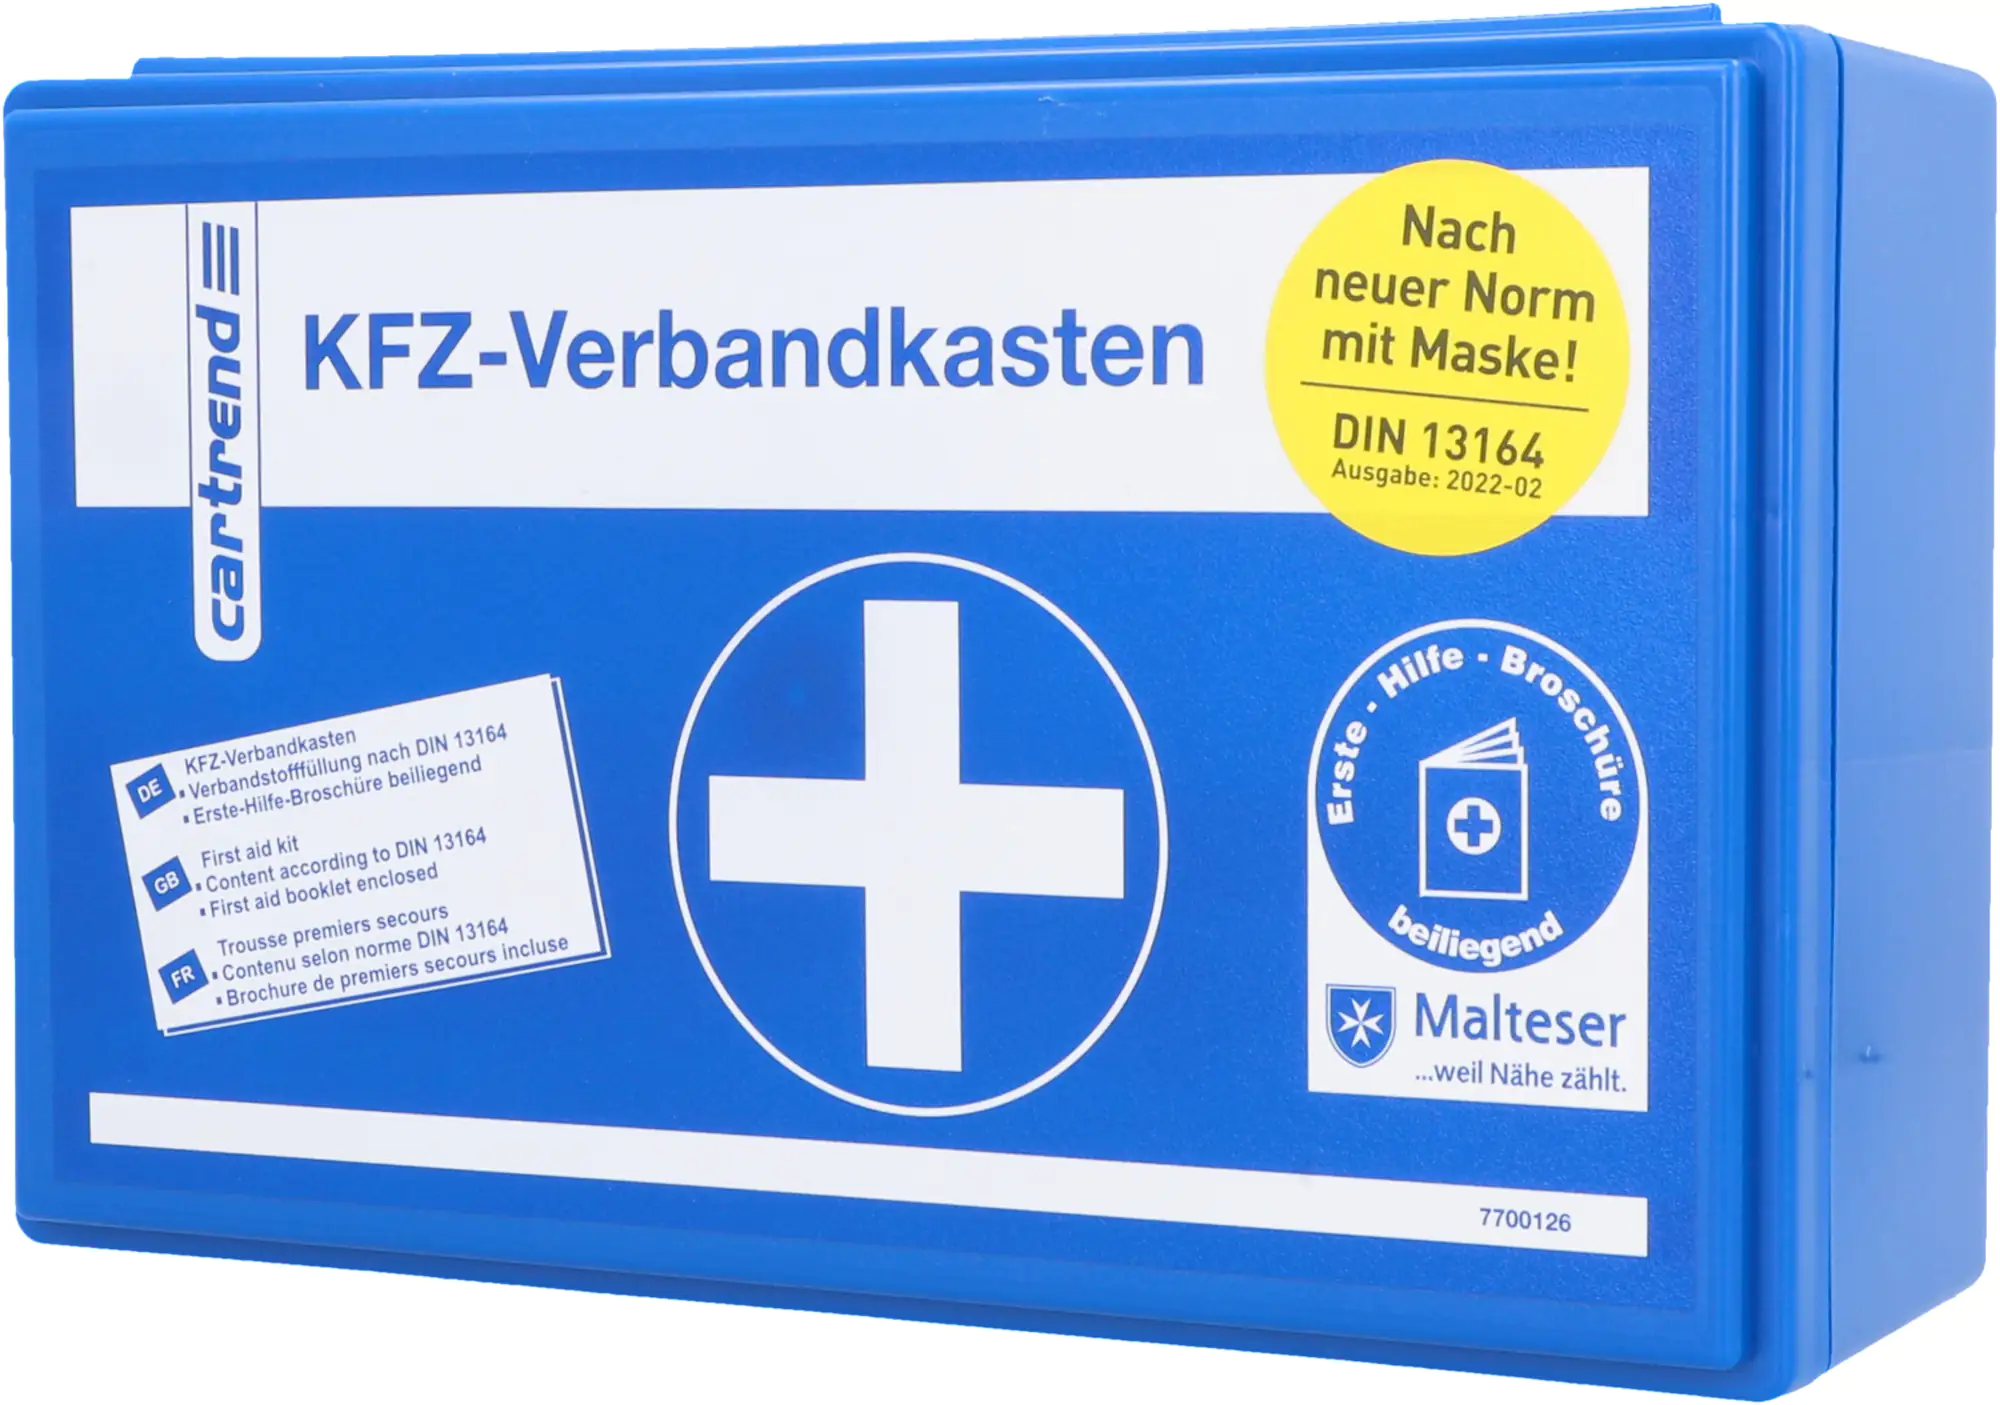 KFZ-Verbandkasten und Erste-Hilfe-Set online bei ADAC kaufen